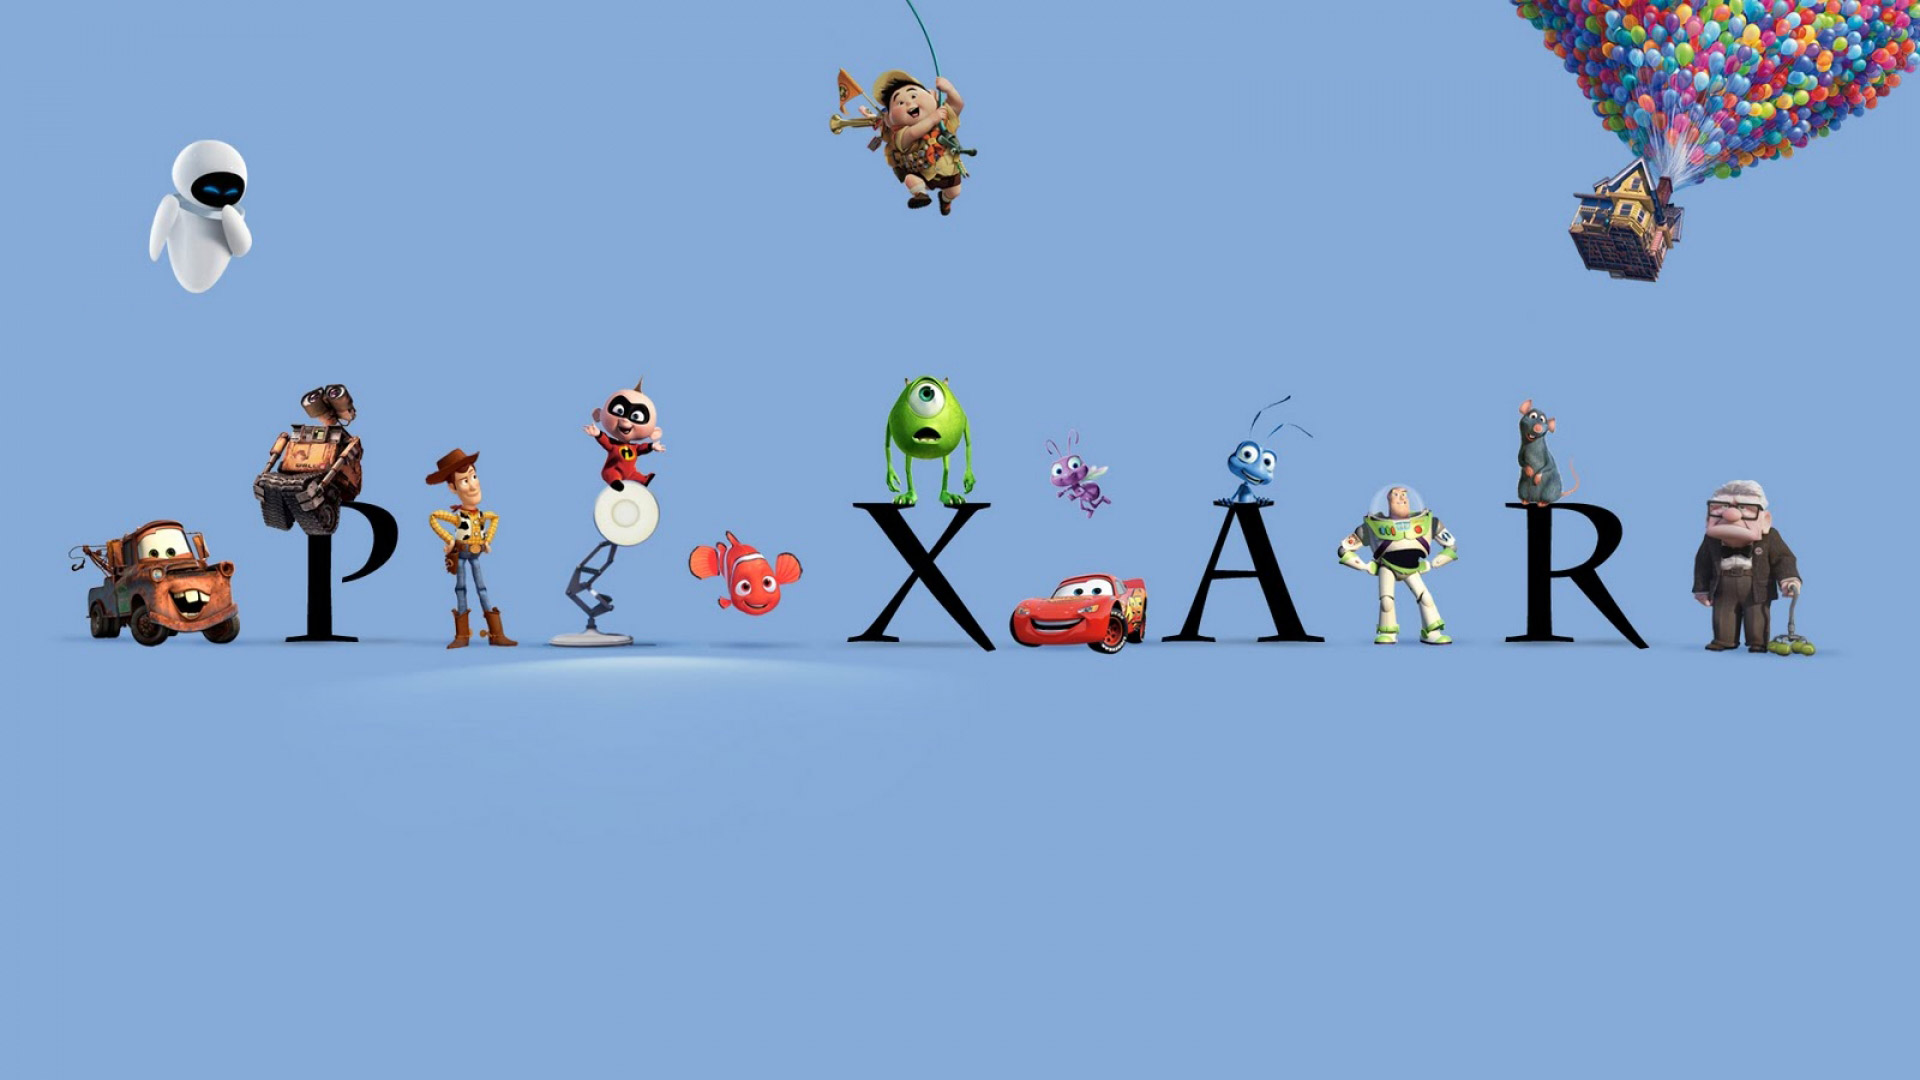 Pixar HD Wallpaper FullHDwpp Full